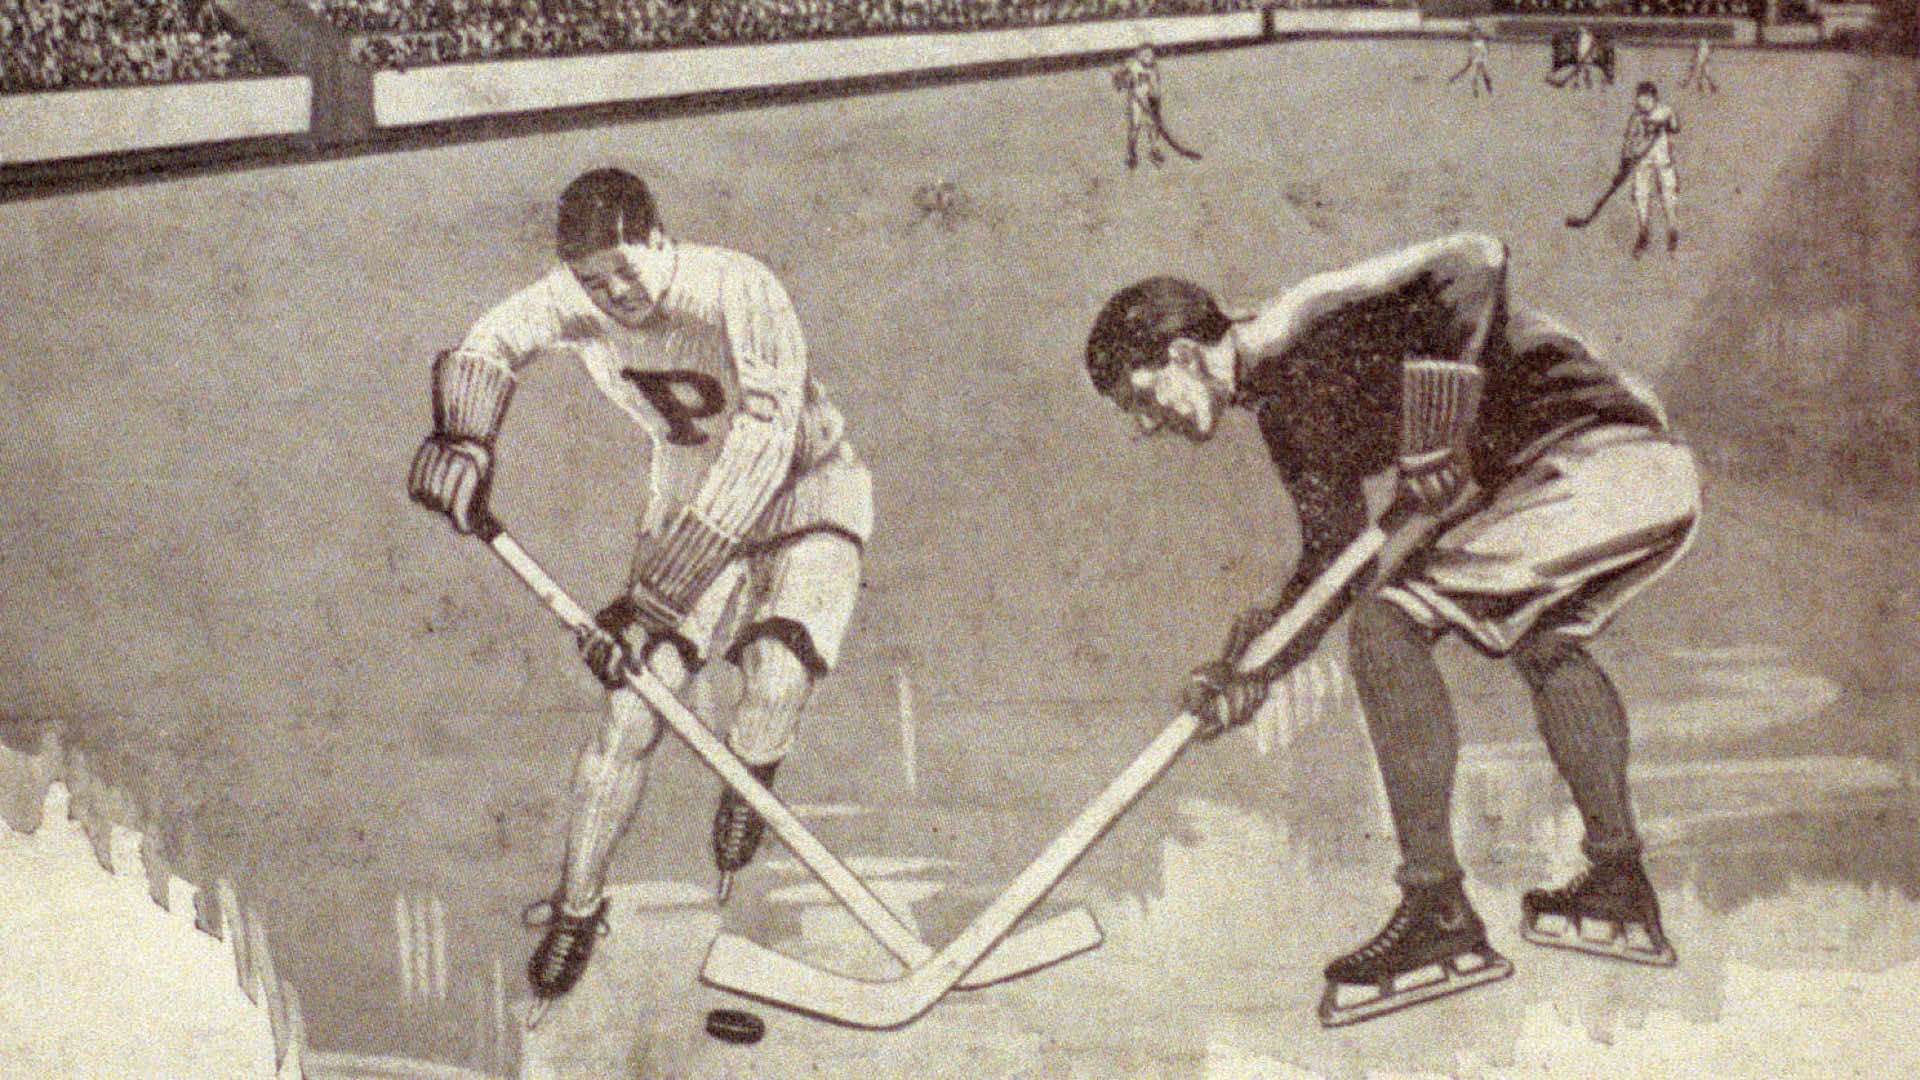 HERB DRURY 1930-31 PHILADELPHIA QUAKERS NHL HOCKEY PHOTO PITTSBURGH PIRATES